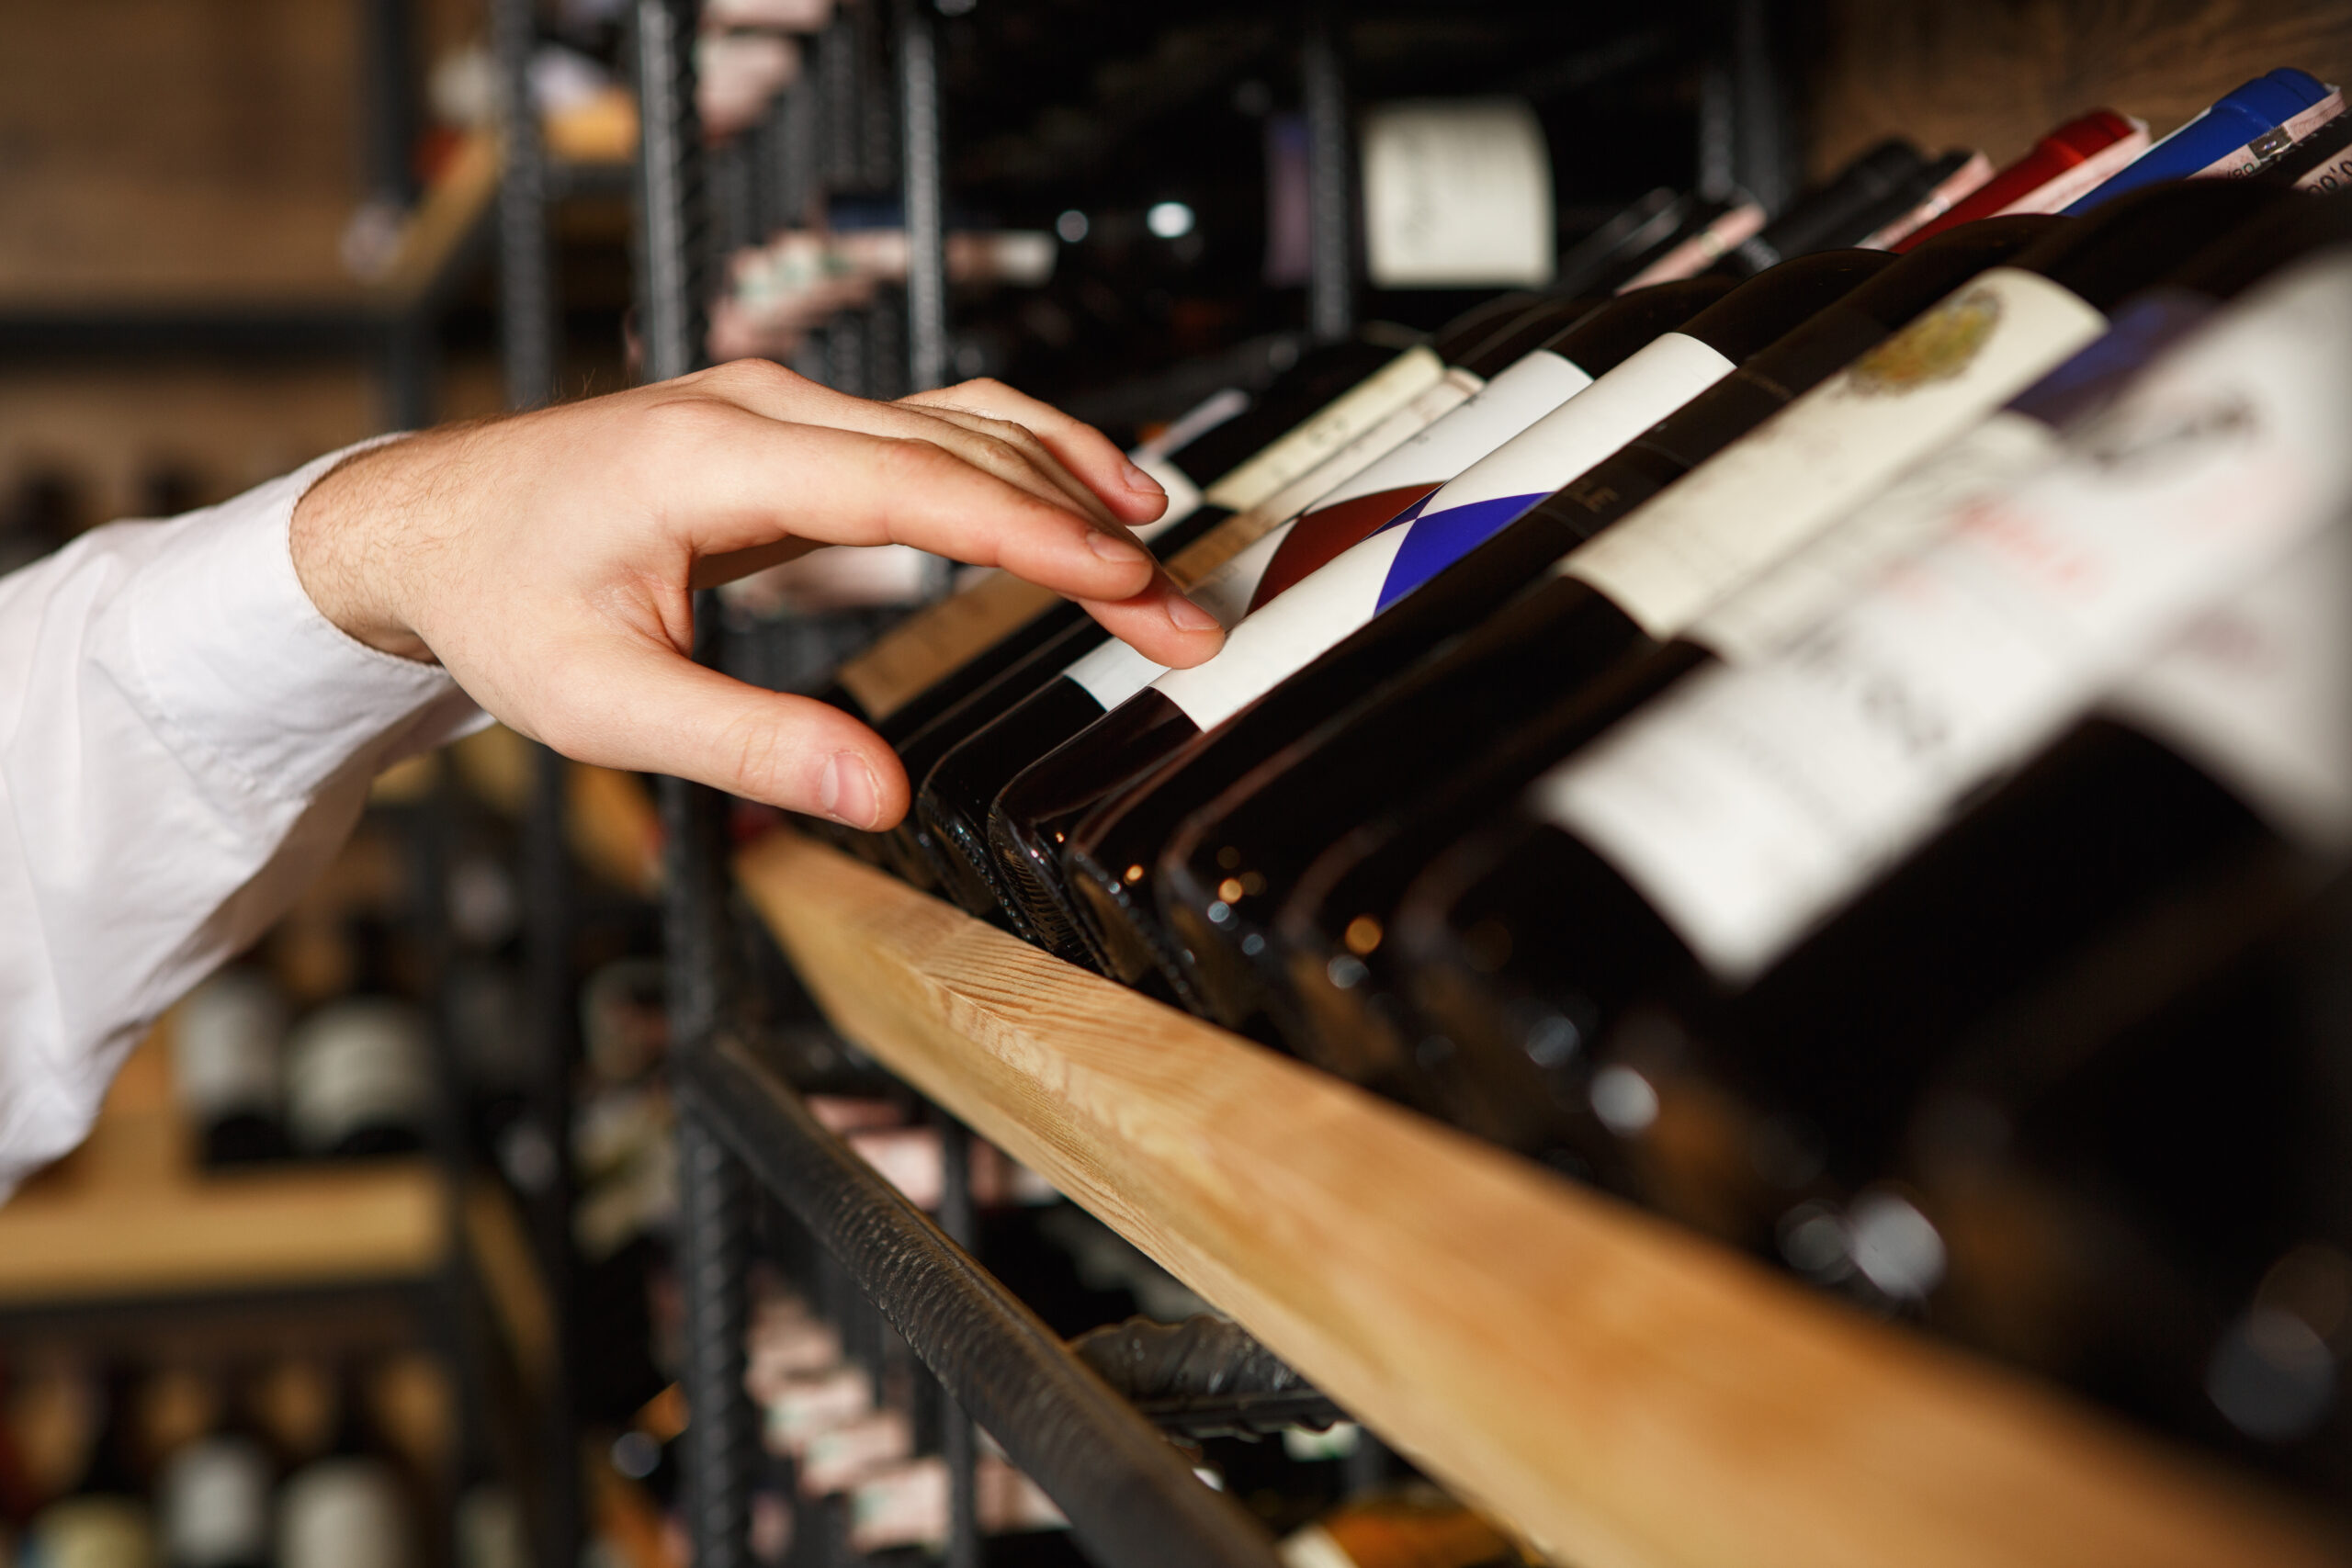 A escolha de um bom vinho não é uma tarefa fácil, mas há algumas perguntas que devem ser feitas na hora da compra. Vão fazer a diferença.